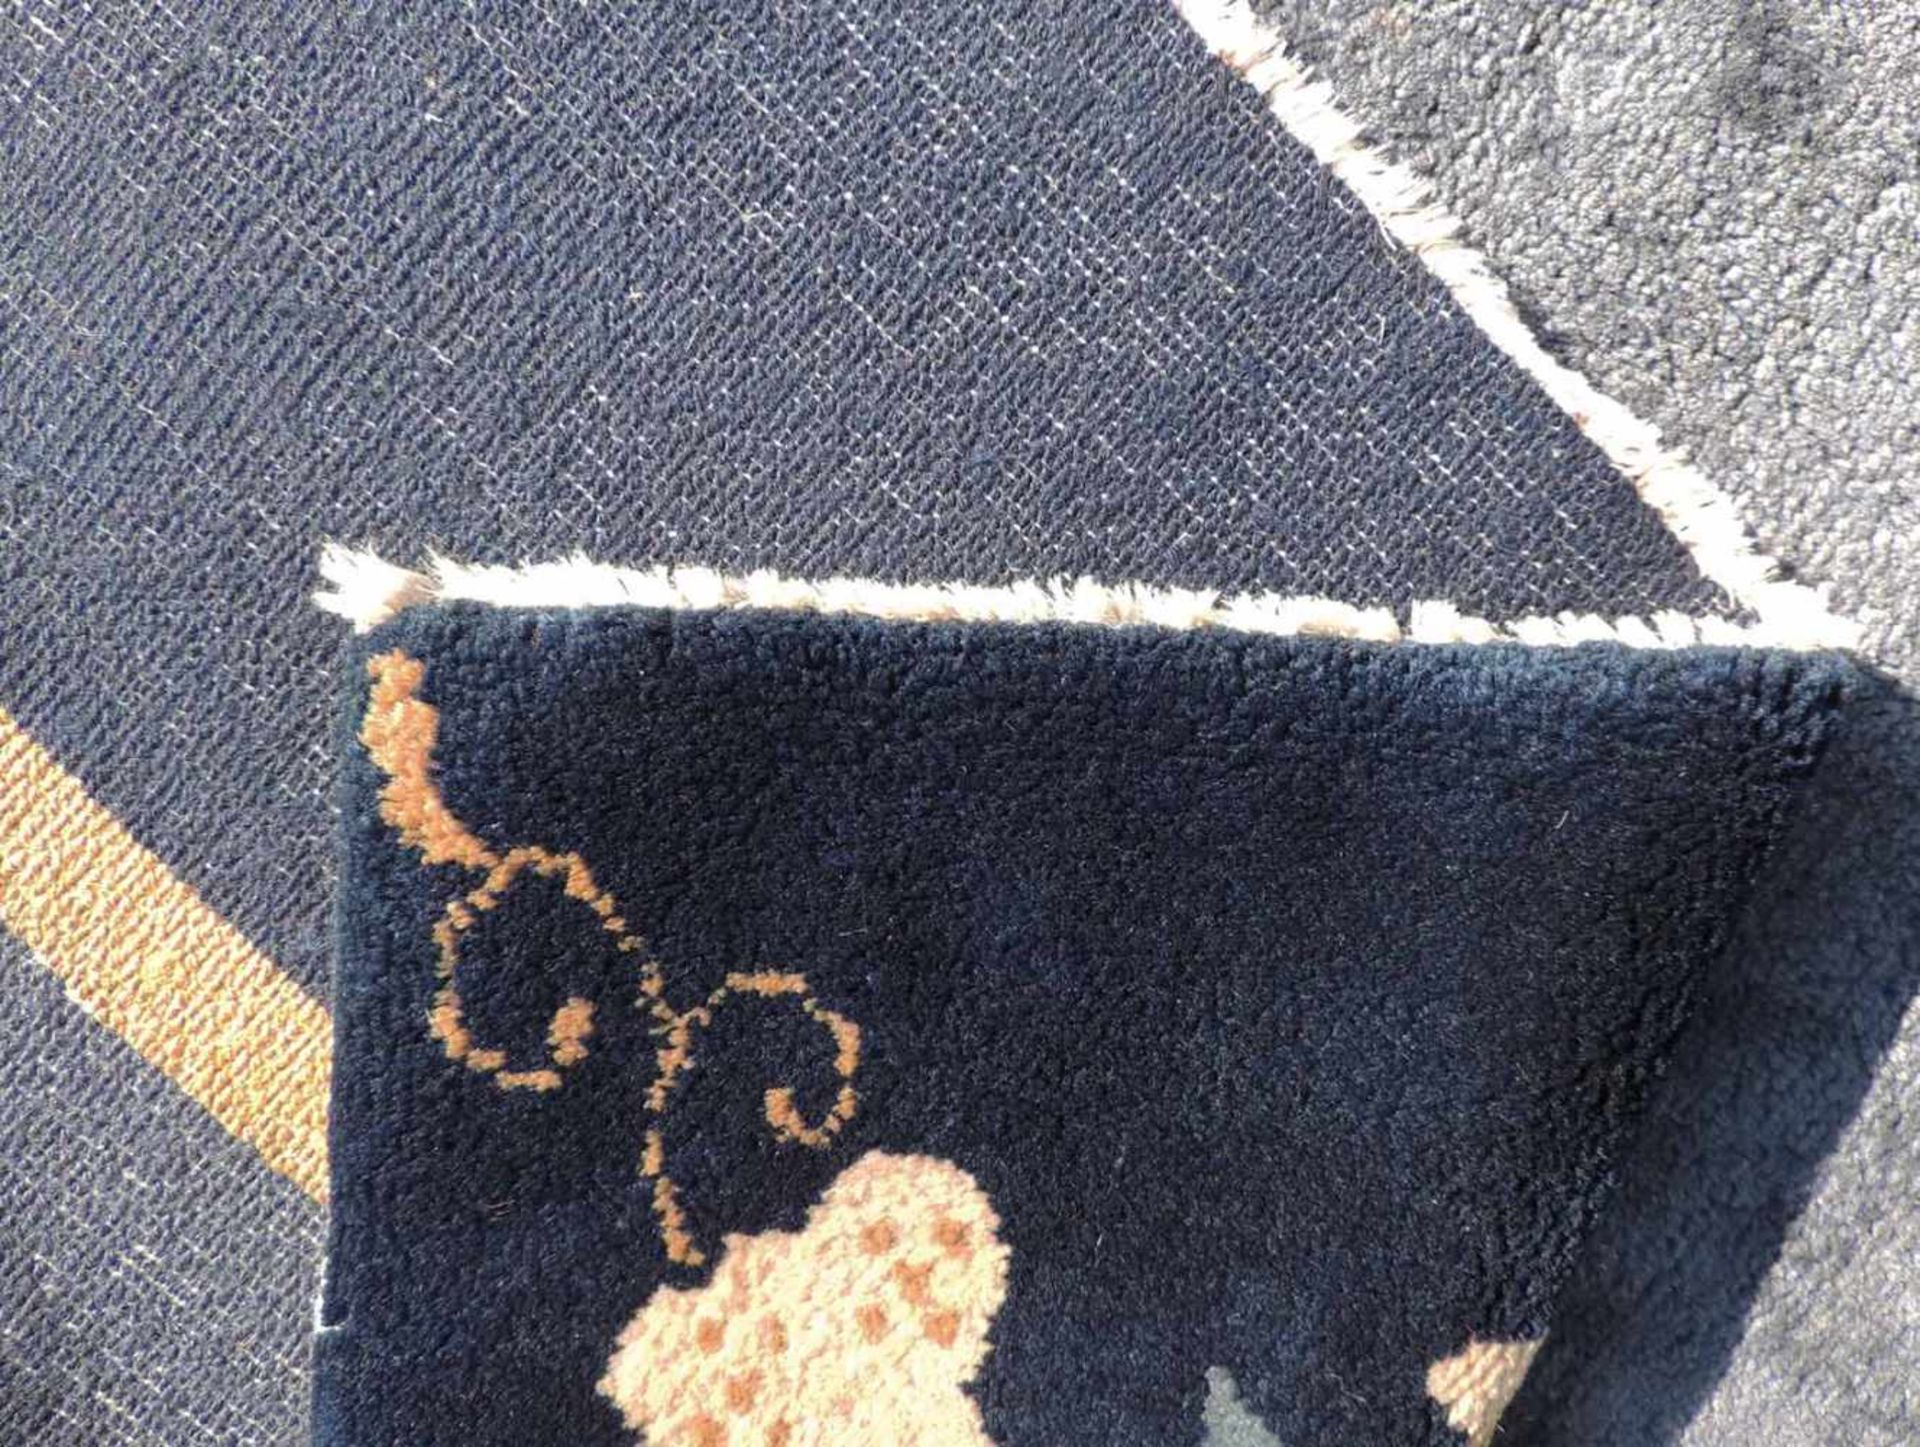 Peking Teppich. China. Antik. Um 1920 361 cm x 267 cm. Handgeknüpft. Mancesterwolle auf Baumwolle. - Bild 8 aus 8